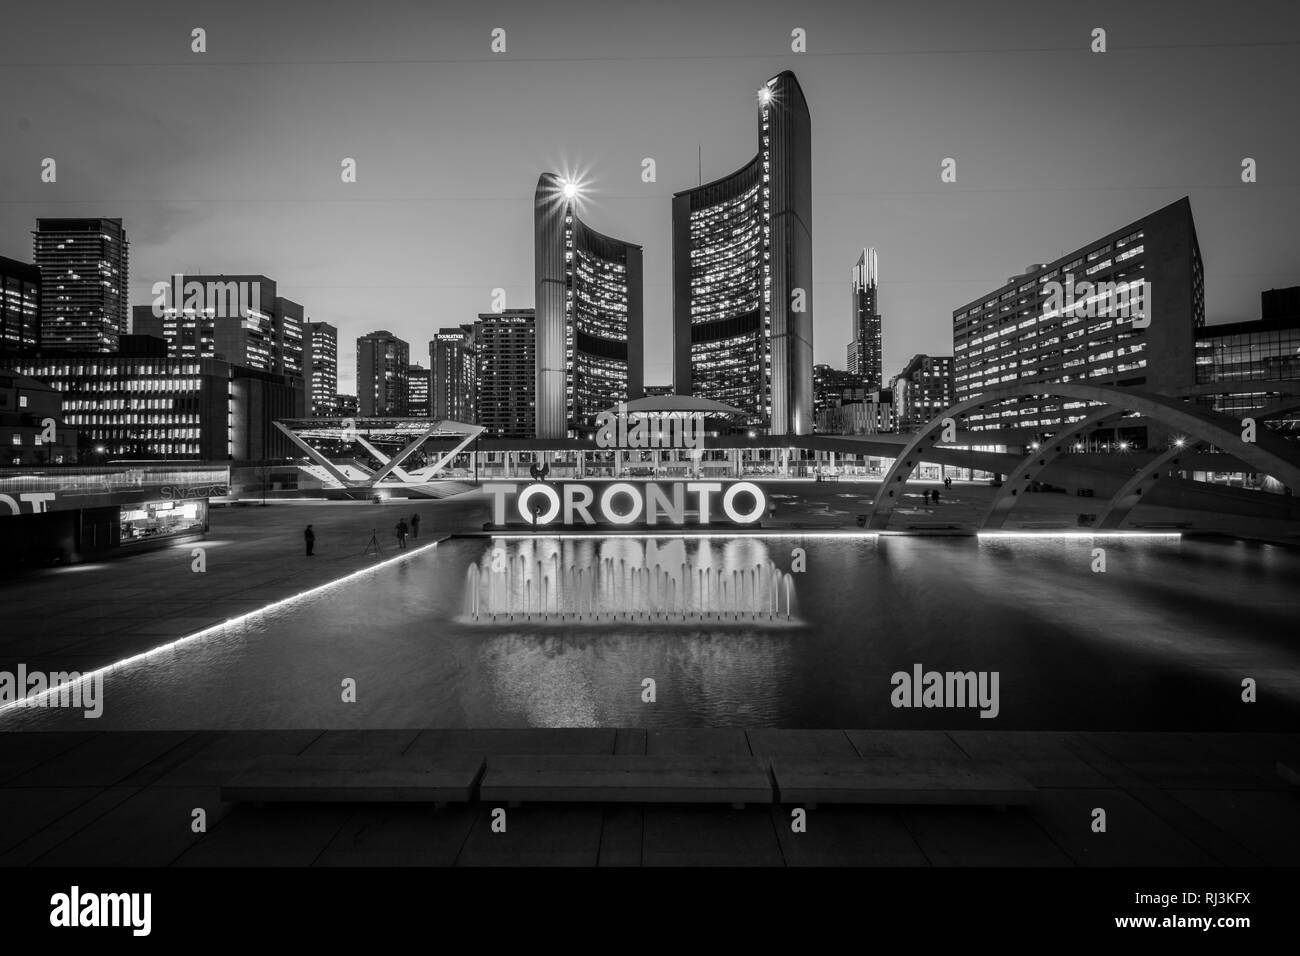 Avis de Nathan Phillips Square et Toronto signer au centre-ville de nuit, à Toronto, en Ontario. Banque D'Images